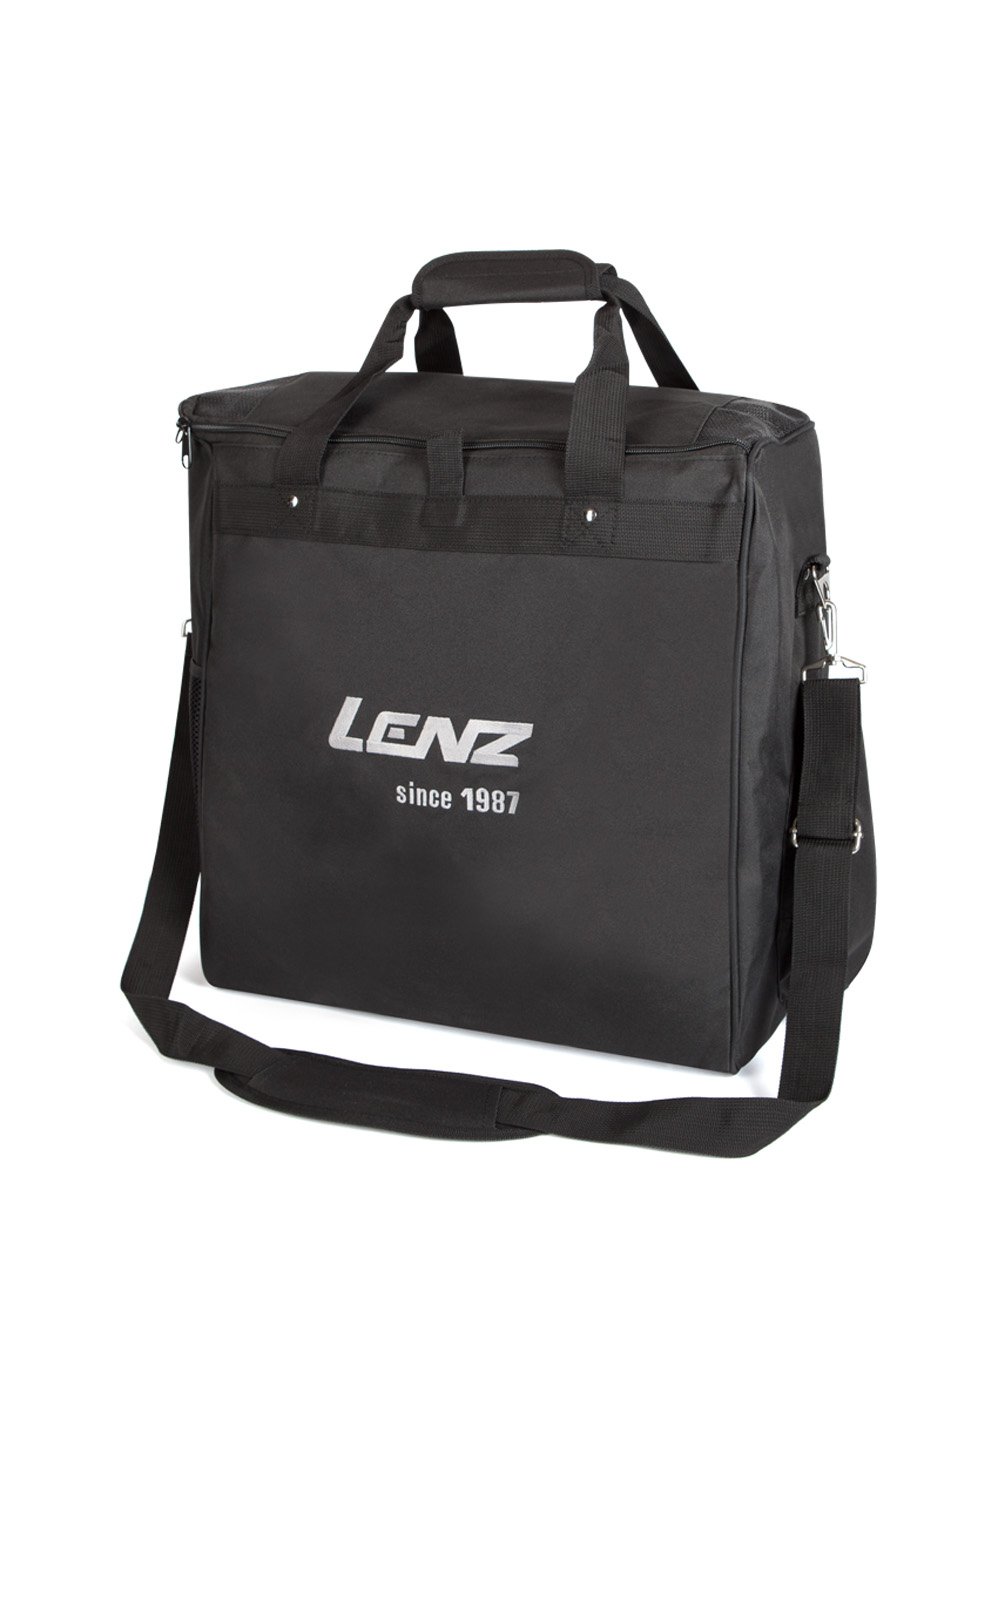 Vyhřívaná taška LENZ Heat Bag 1.0